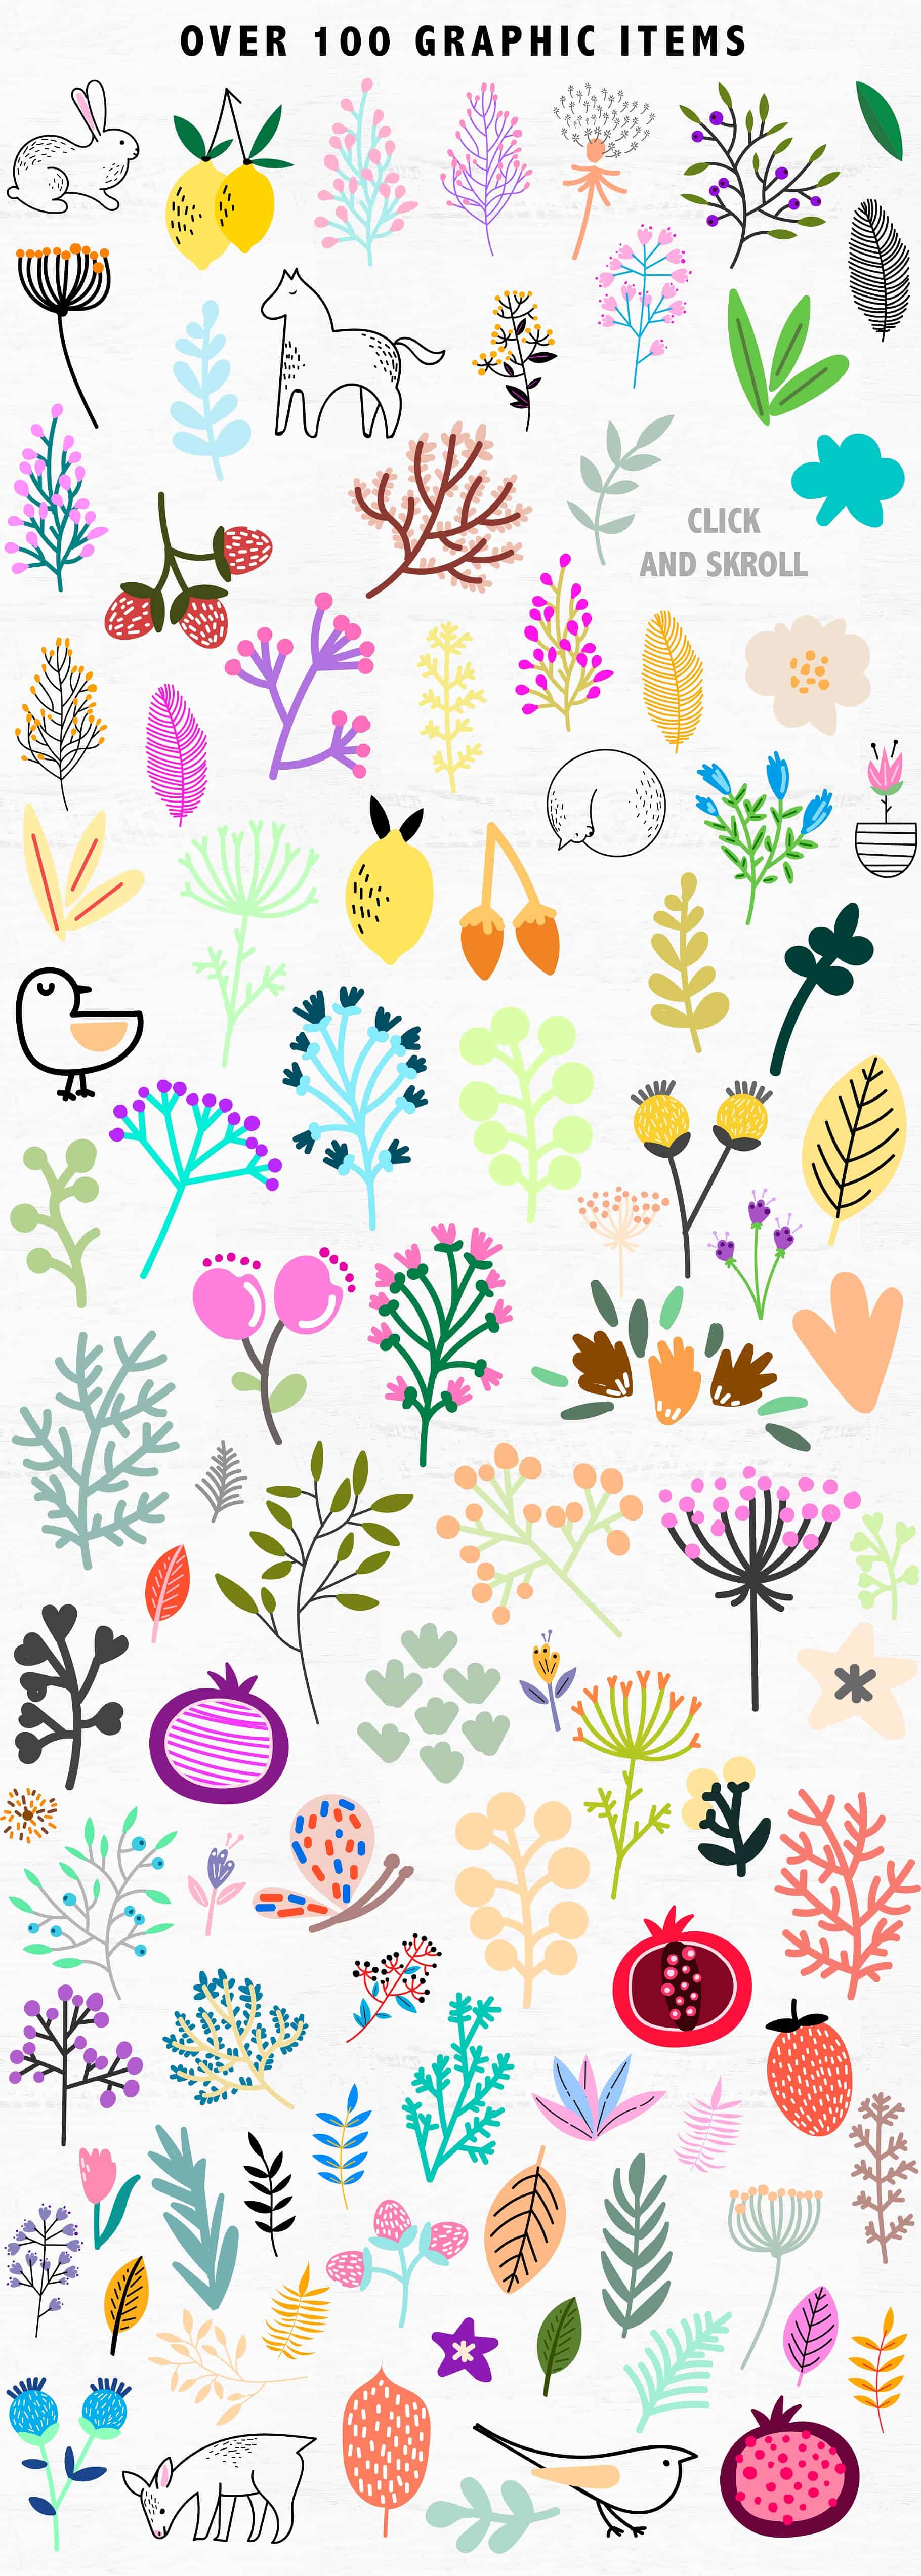 Scandi Garden: Graphic & Pattern Collection